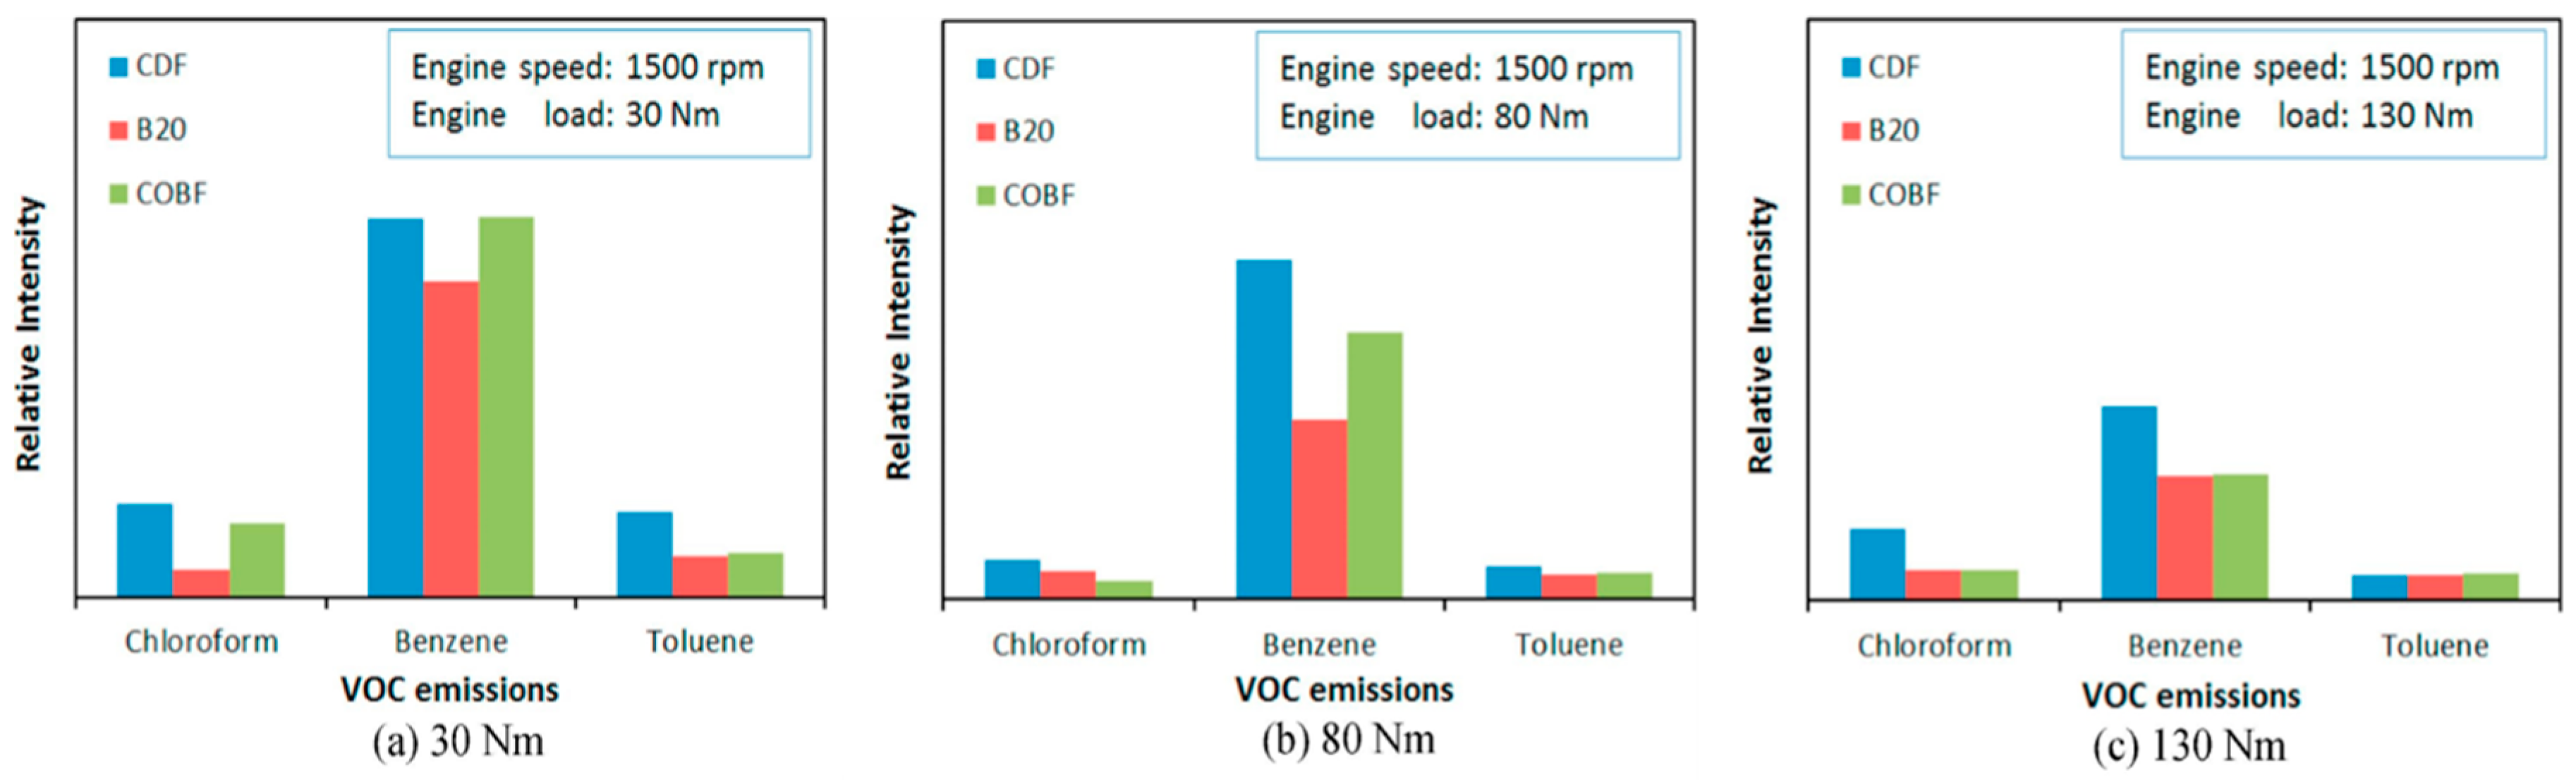 Biodiesel Blends in Diesel Engines 